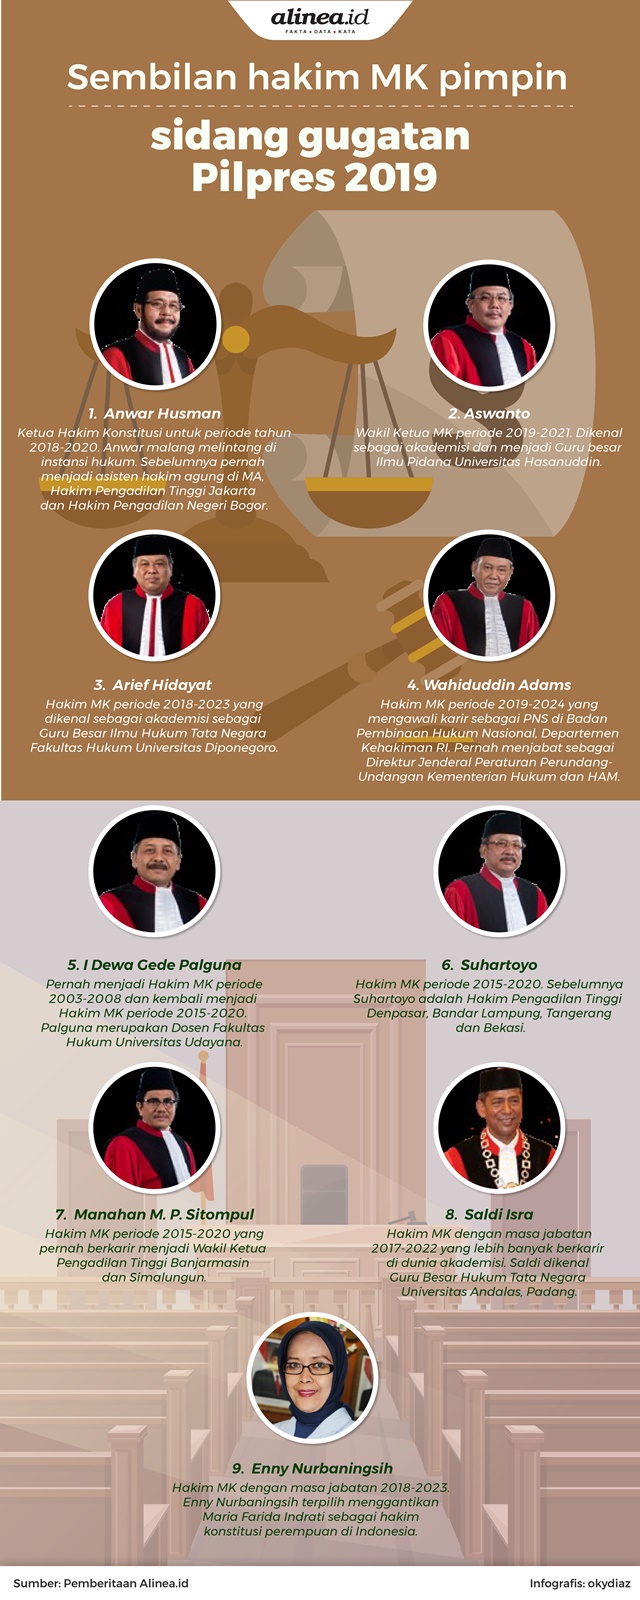 Sembilan hakim MK yang memimpin sidang gugatan Pilpres 2019.Alinea.id